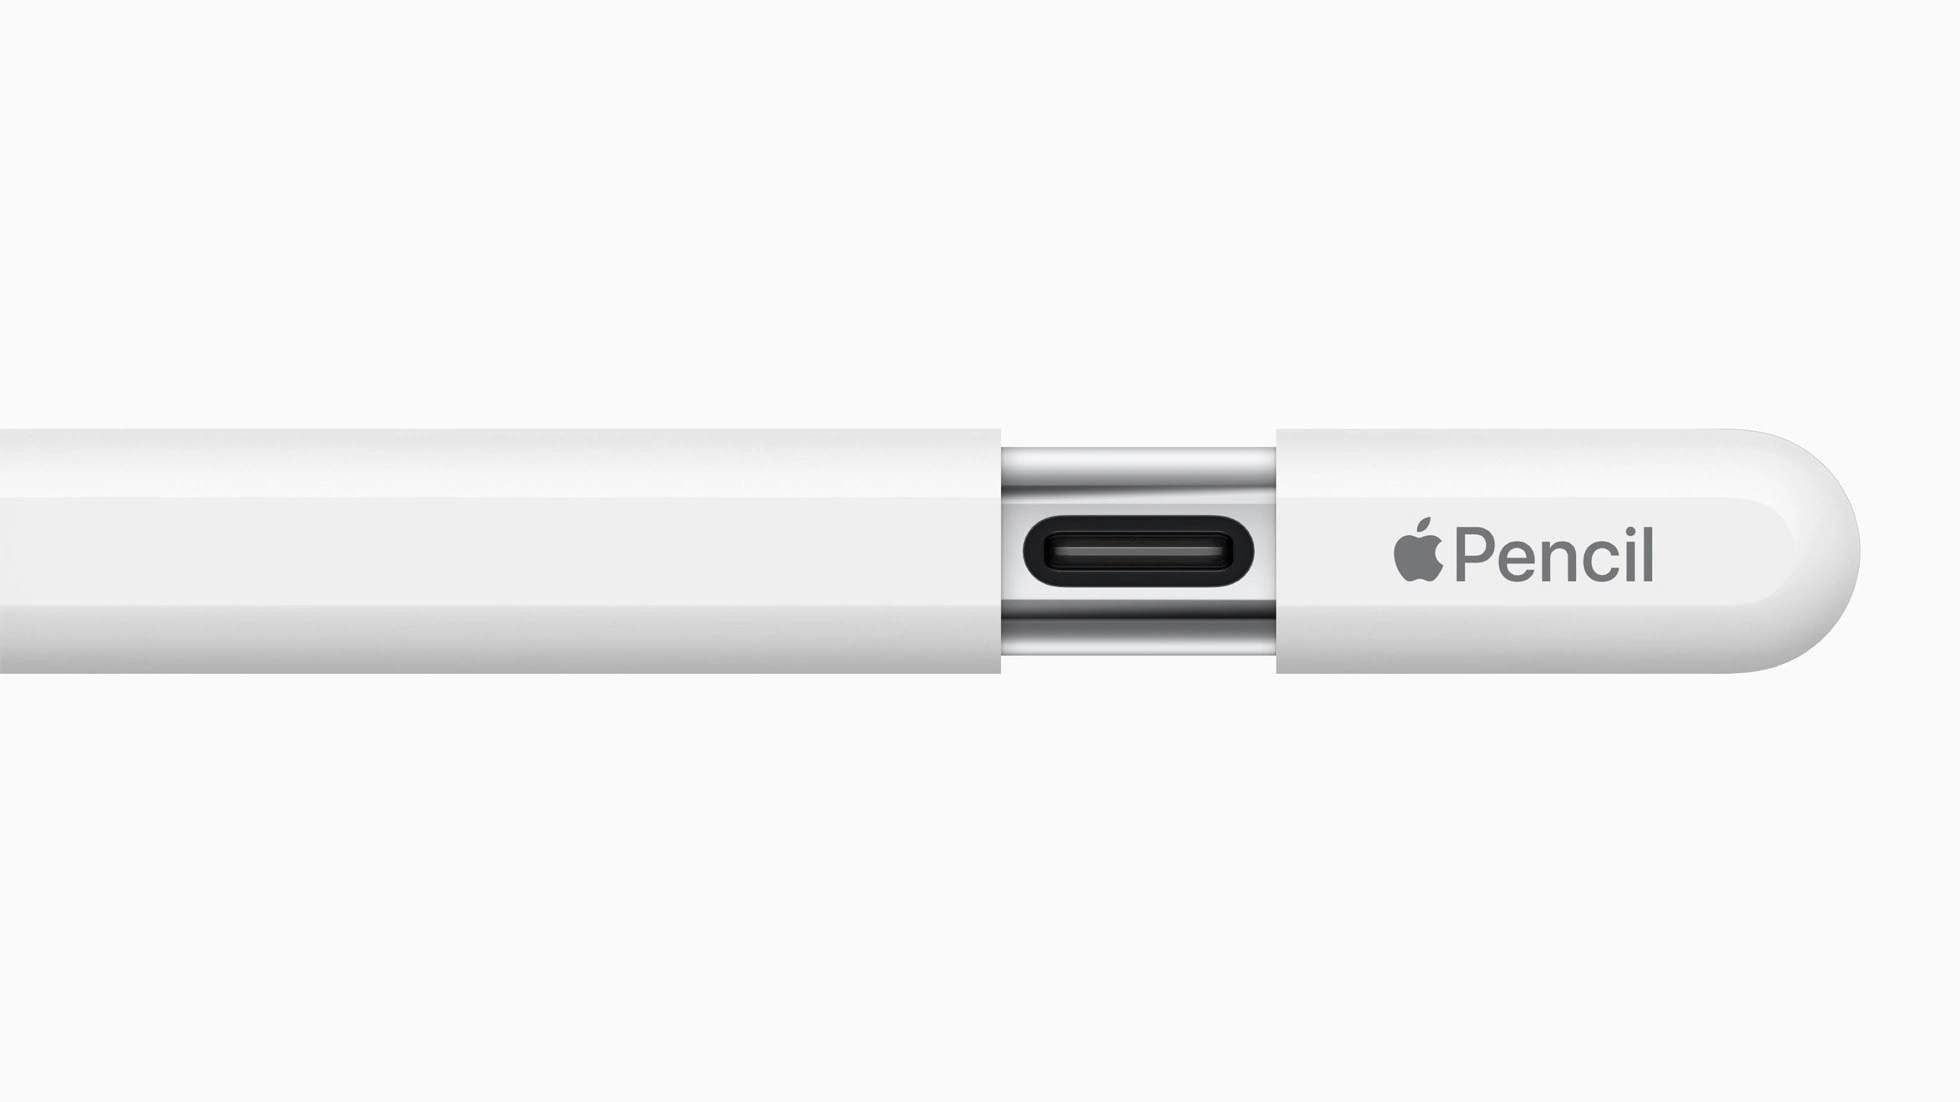 Колпачок на конце карандаша не съёмный и просто отодвигается, под ним и находится порт USB-C для зарядки